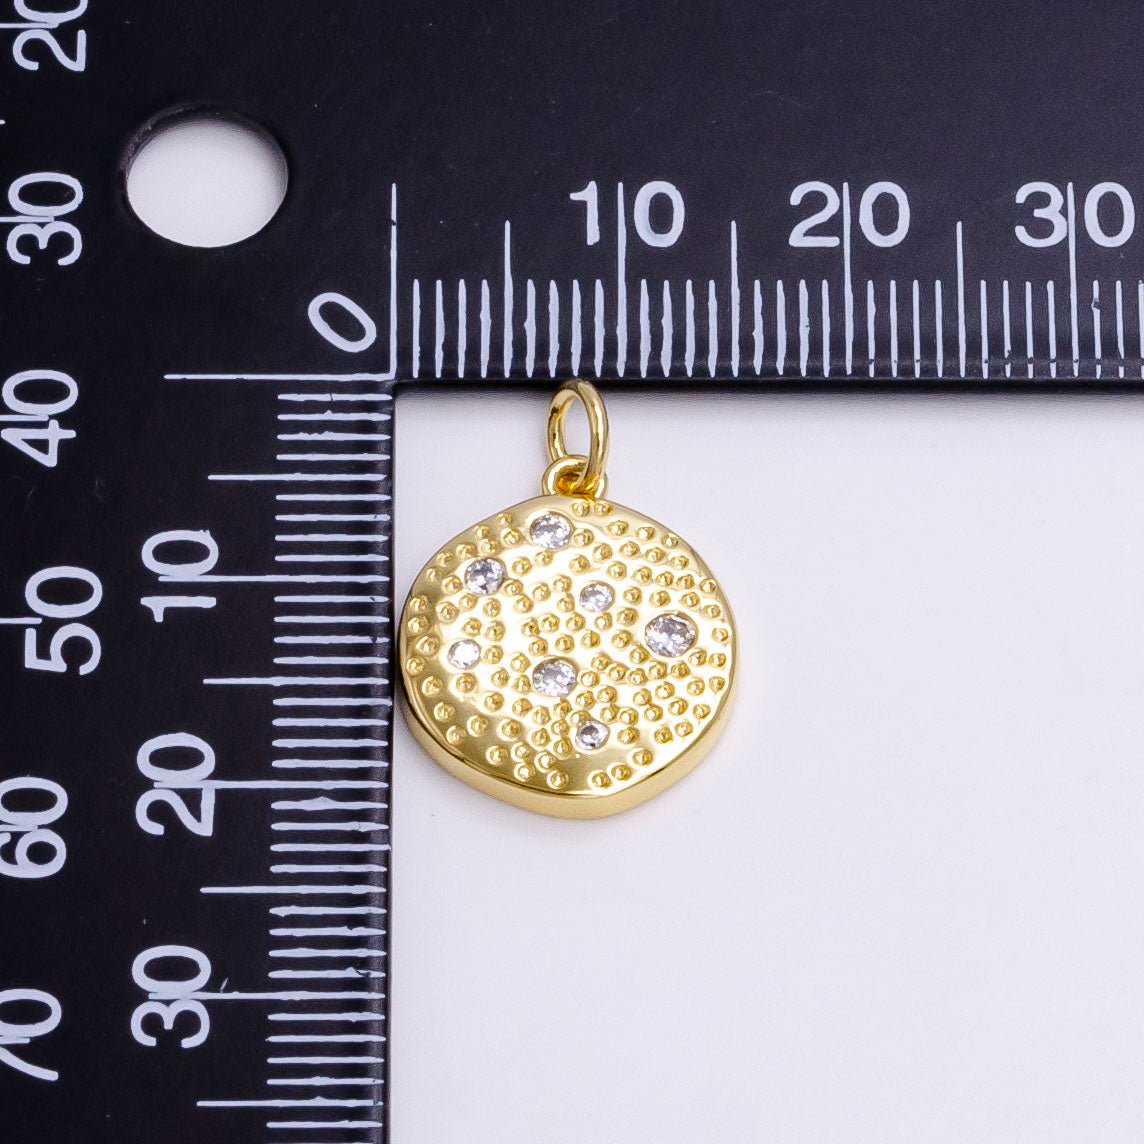 Gold Bubble Charm, Bubble Pendant, Bubble Coin Charm, Tiny Bubble Charm 14k Gold Filled Charm N-240 - DLUXCA